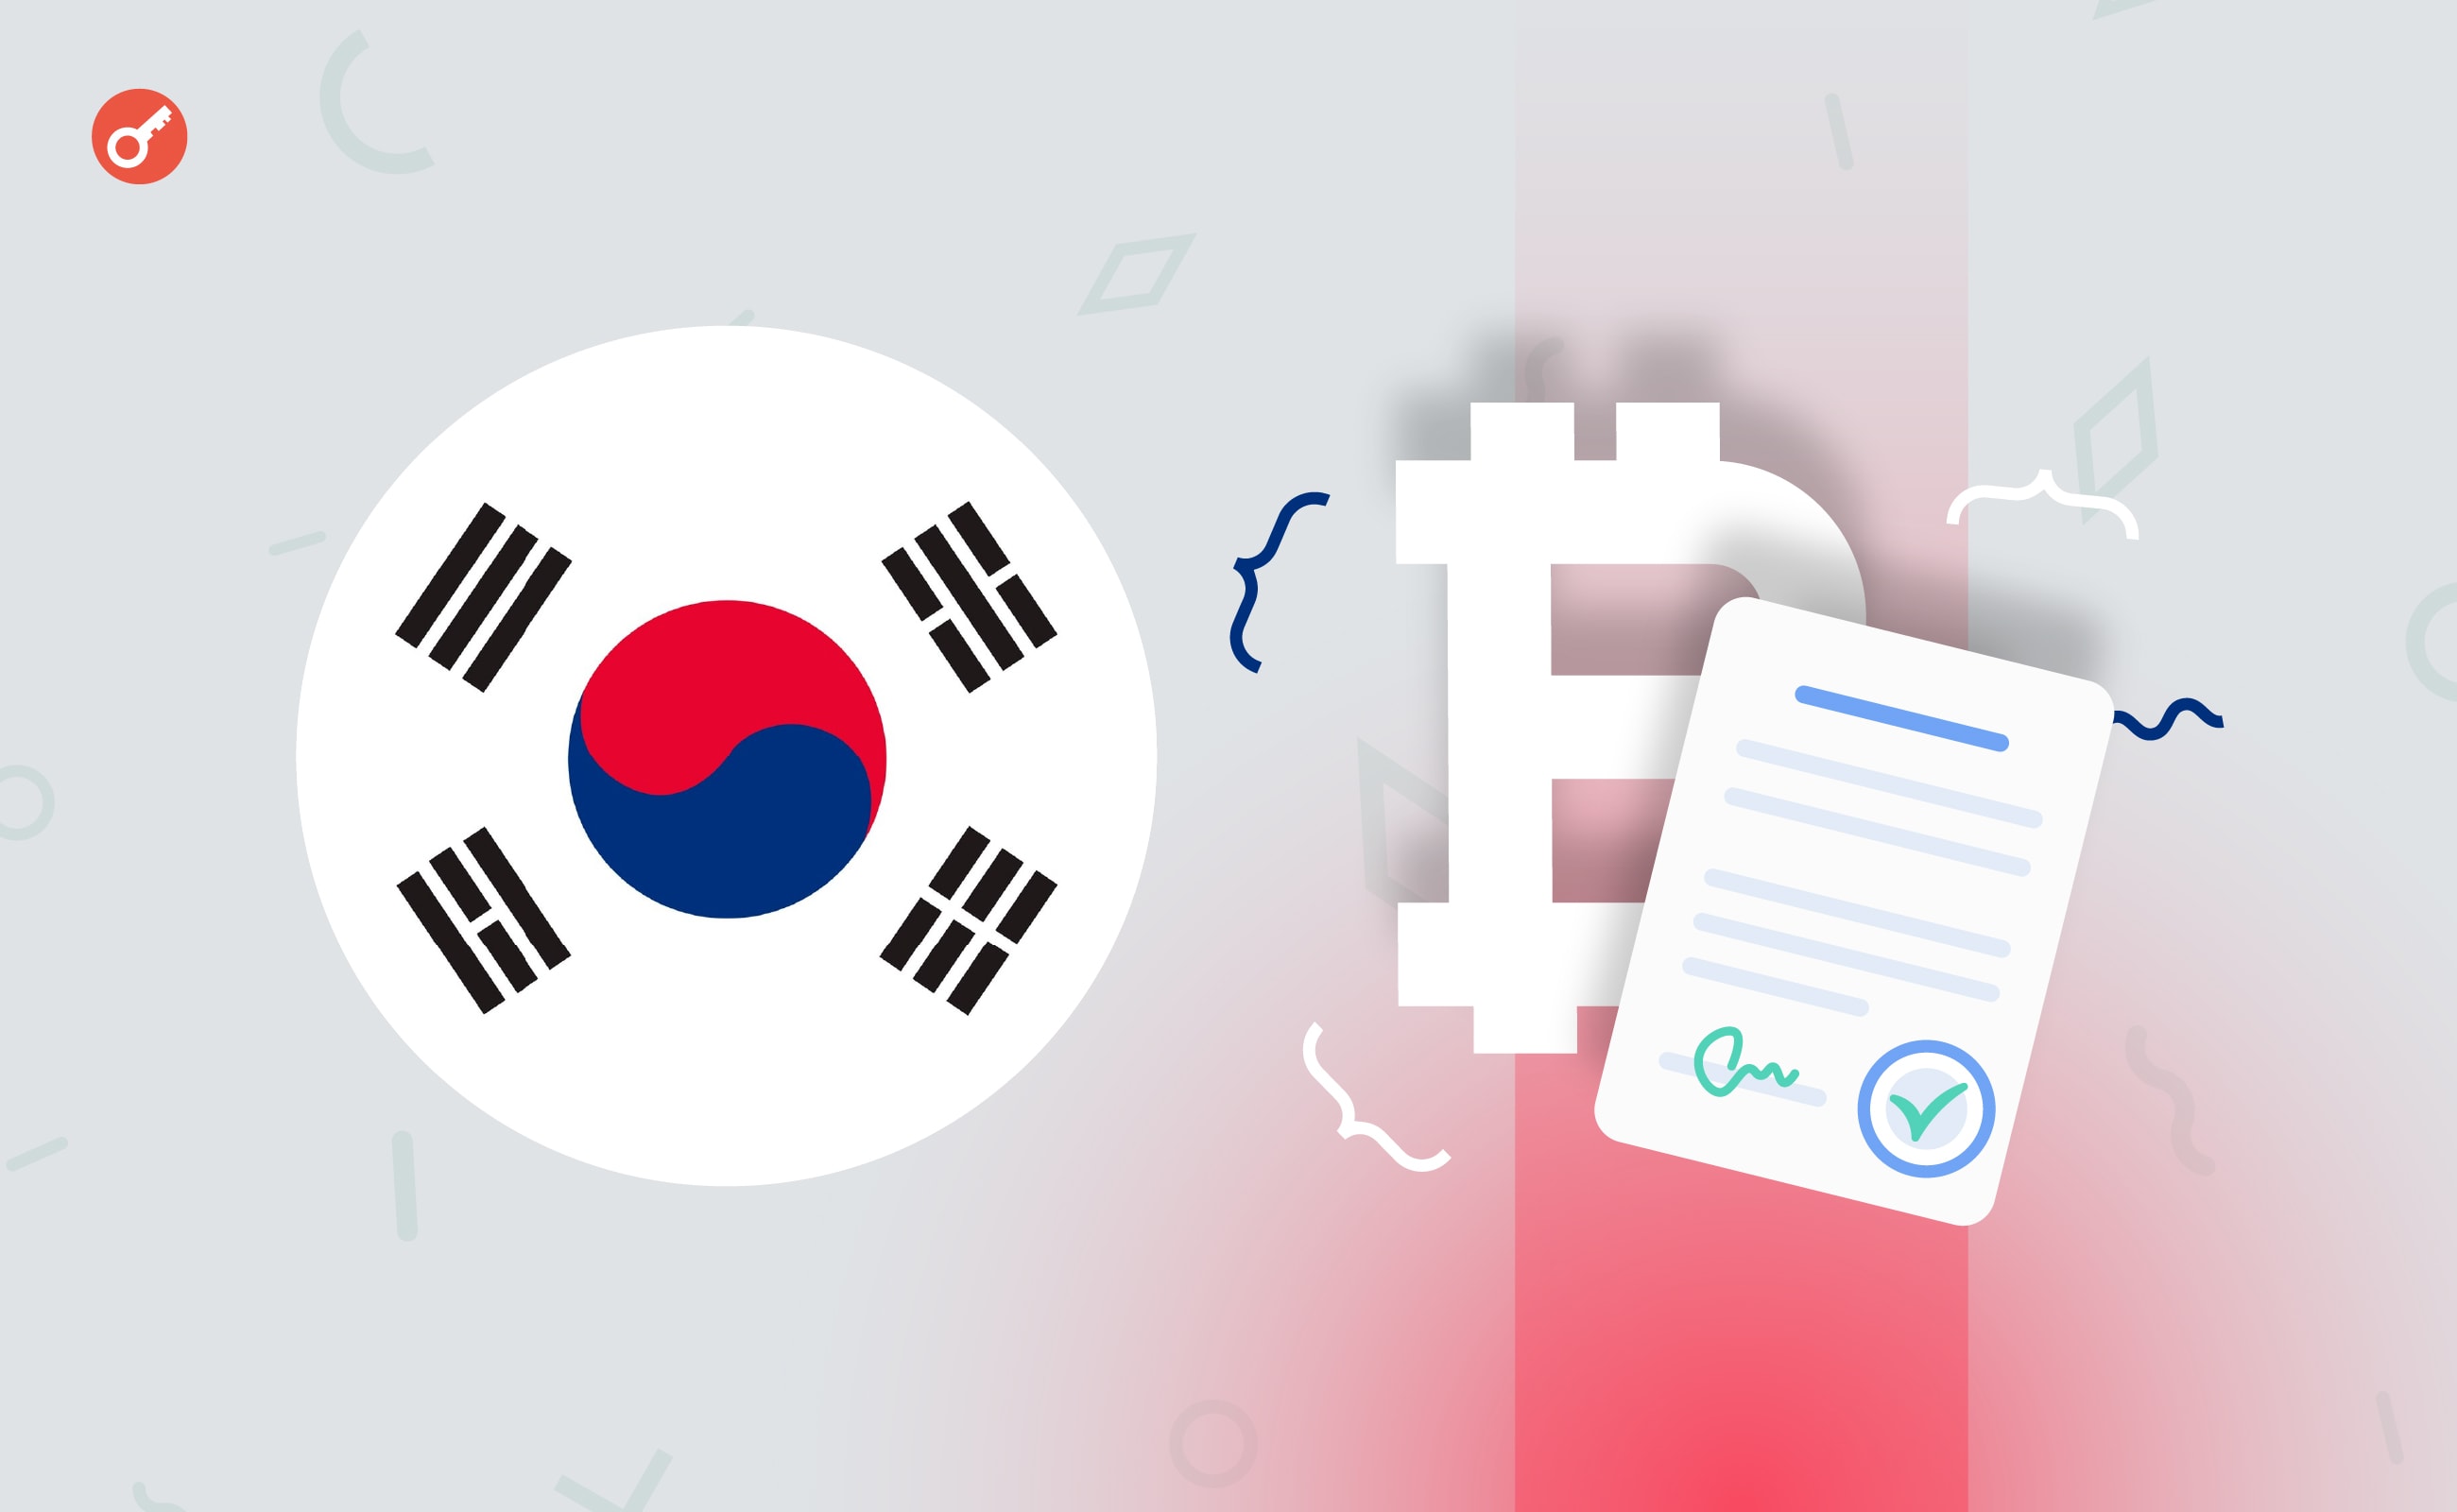 Власти Южной Кореи планируют отложить законопроект о налогообложении криптоактивов. Заглавный коллаж новости.